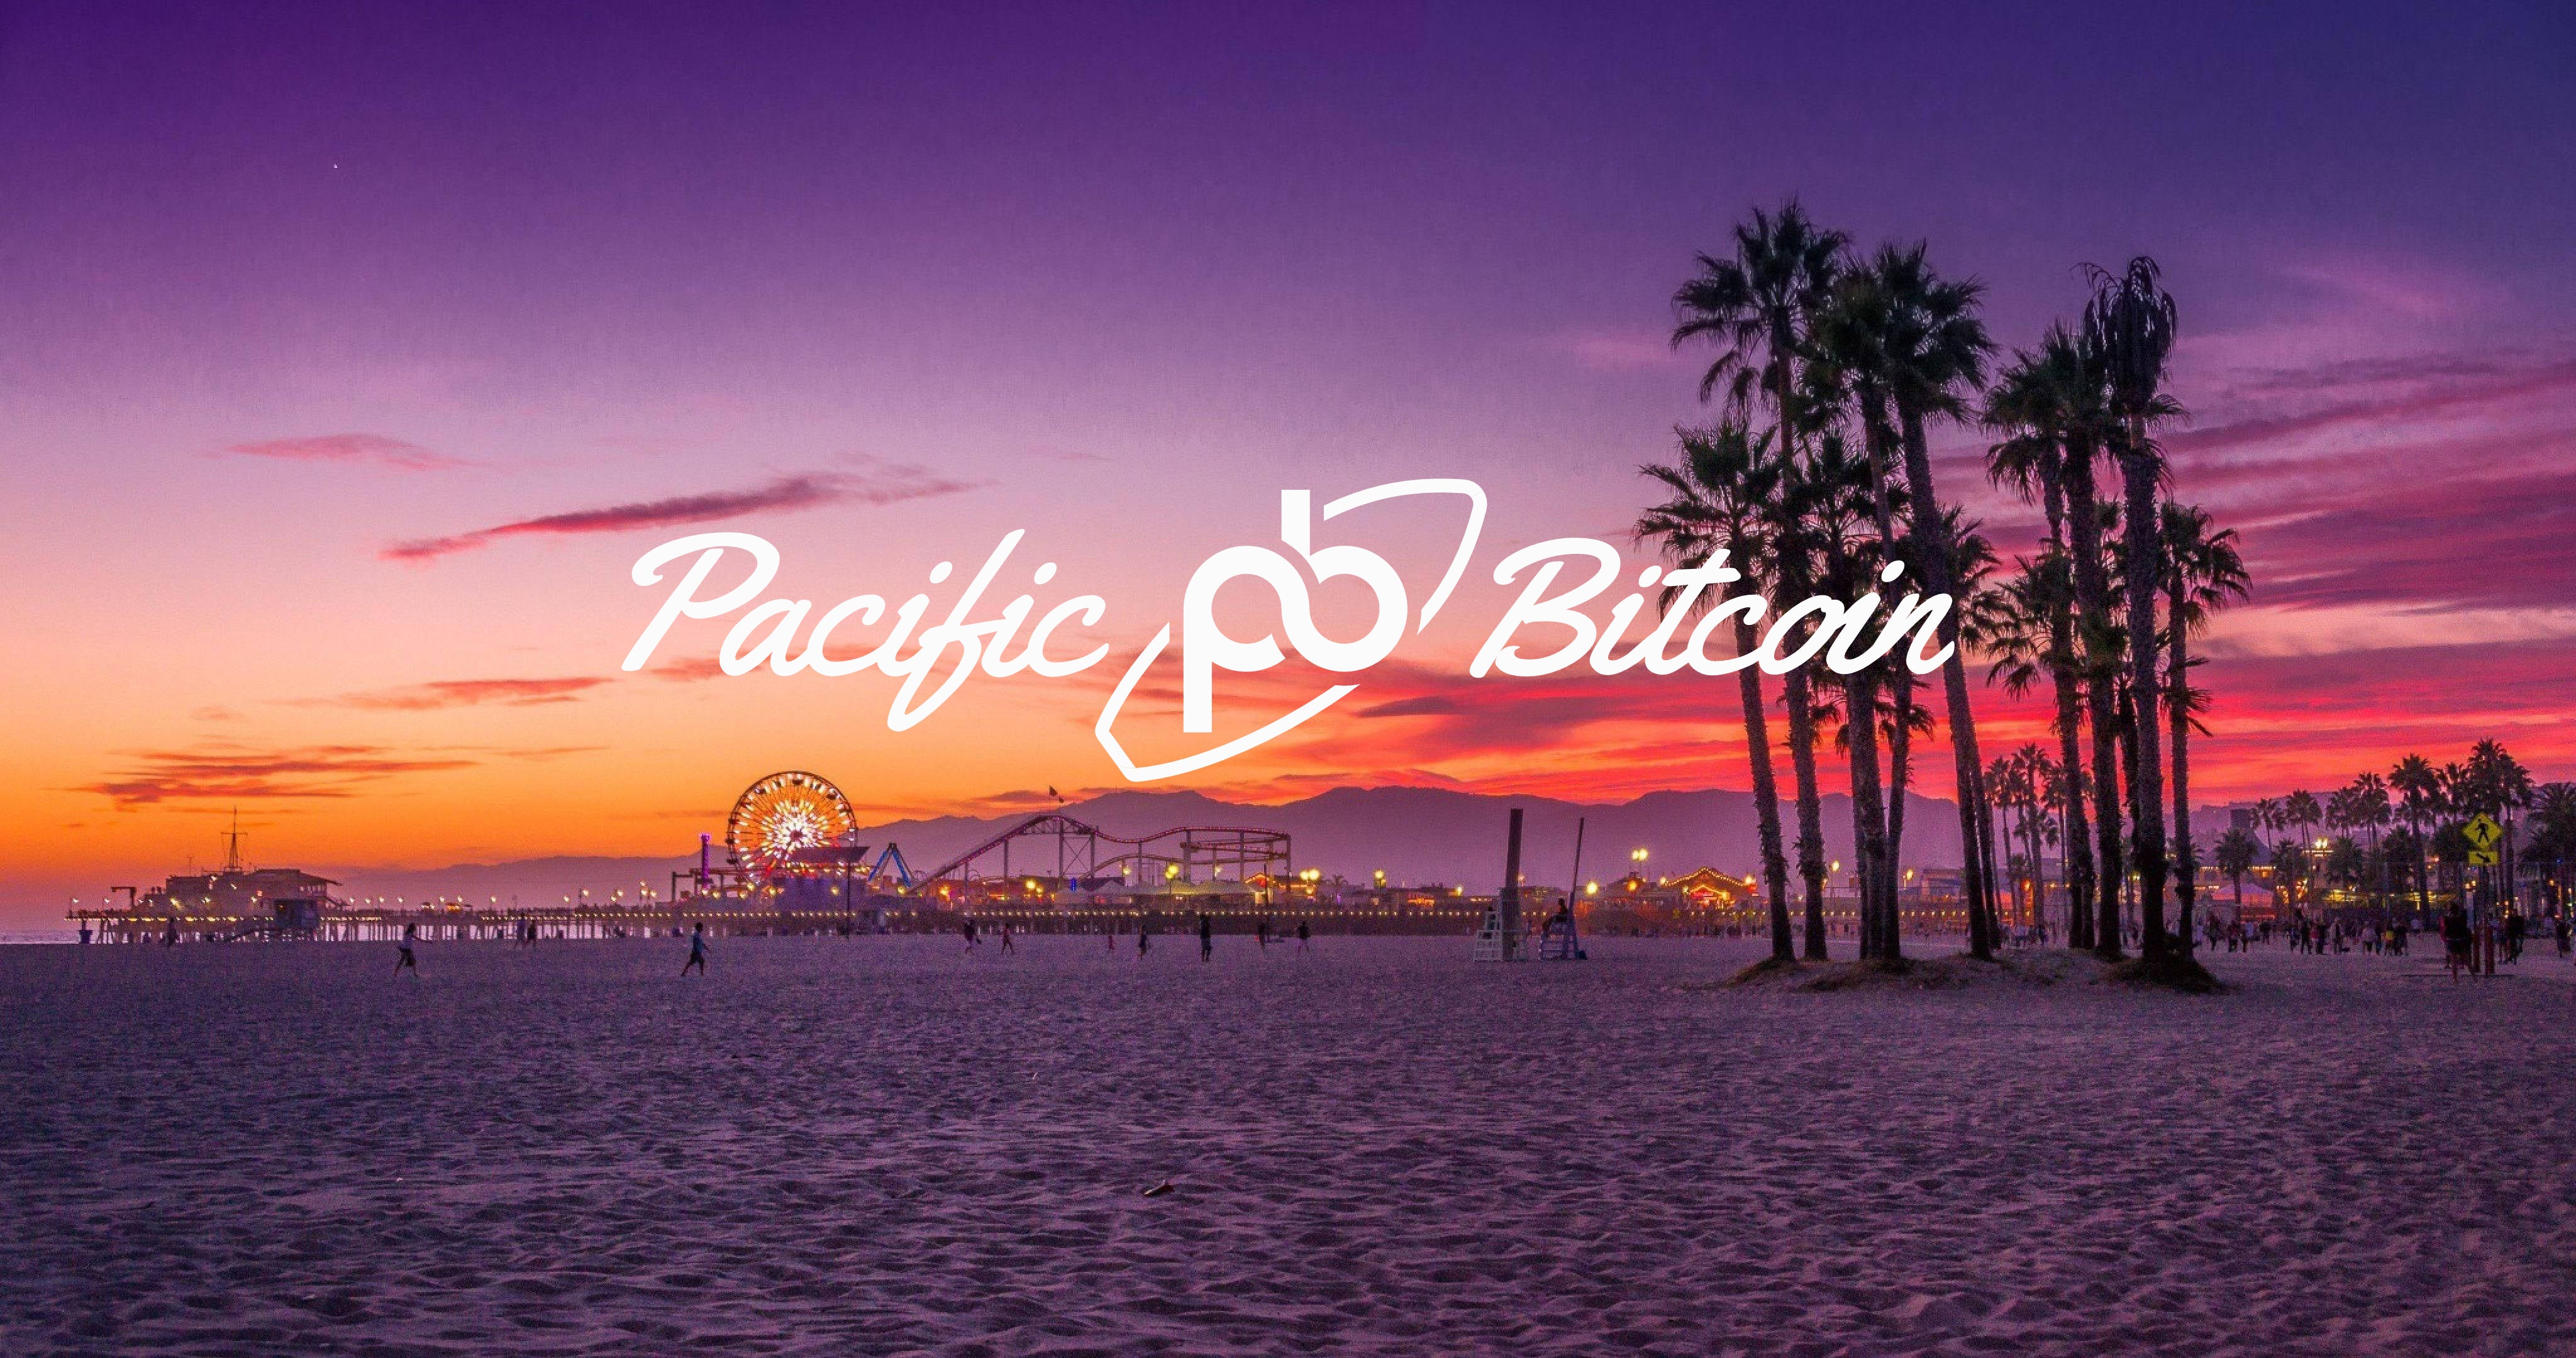 Pacific Bitcoin Festival